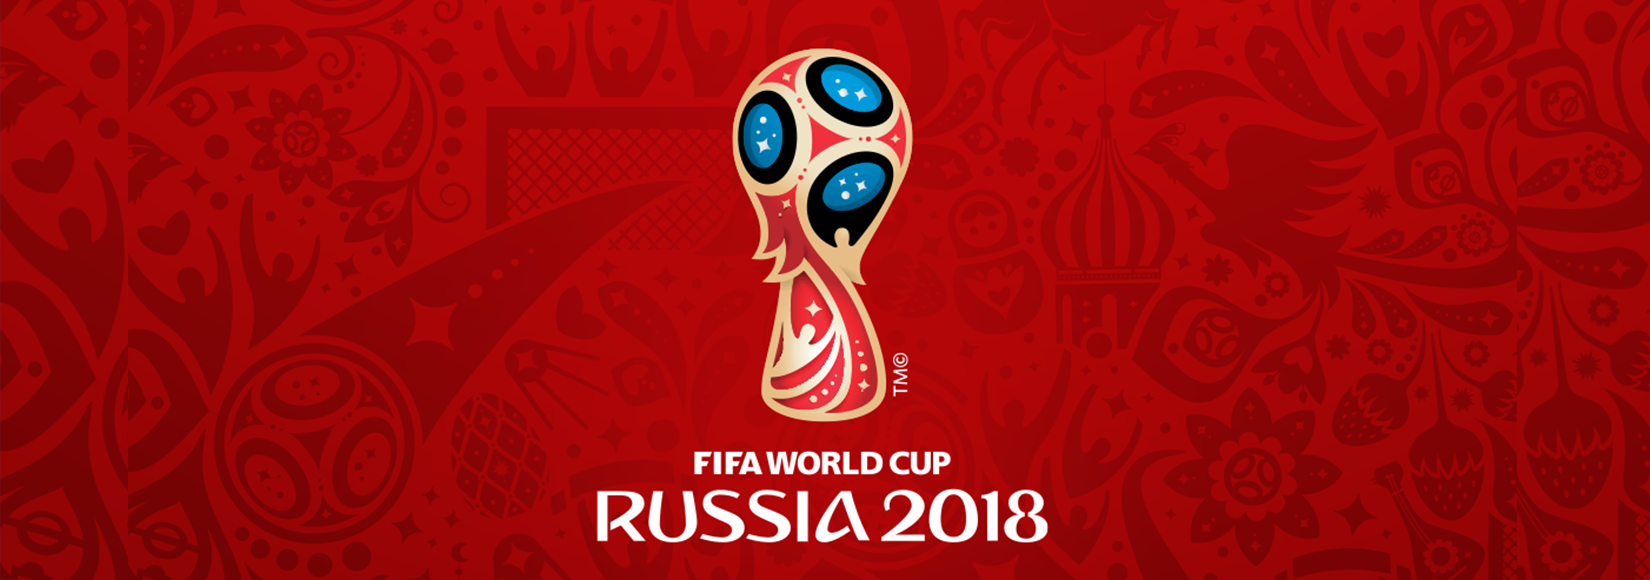 تاریخ شروع جام جهانی 2018 روسیه ، زمان بازی ها و تیم های حاضر